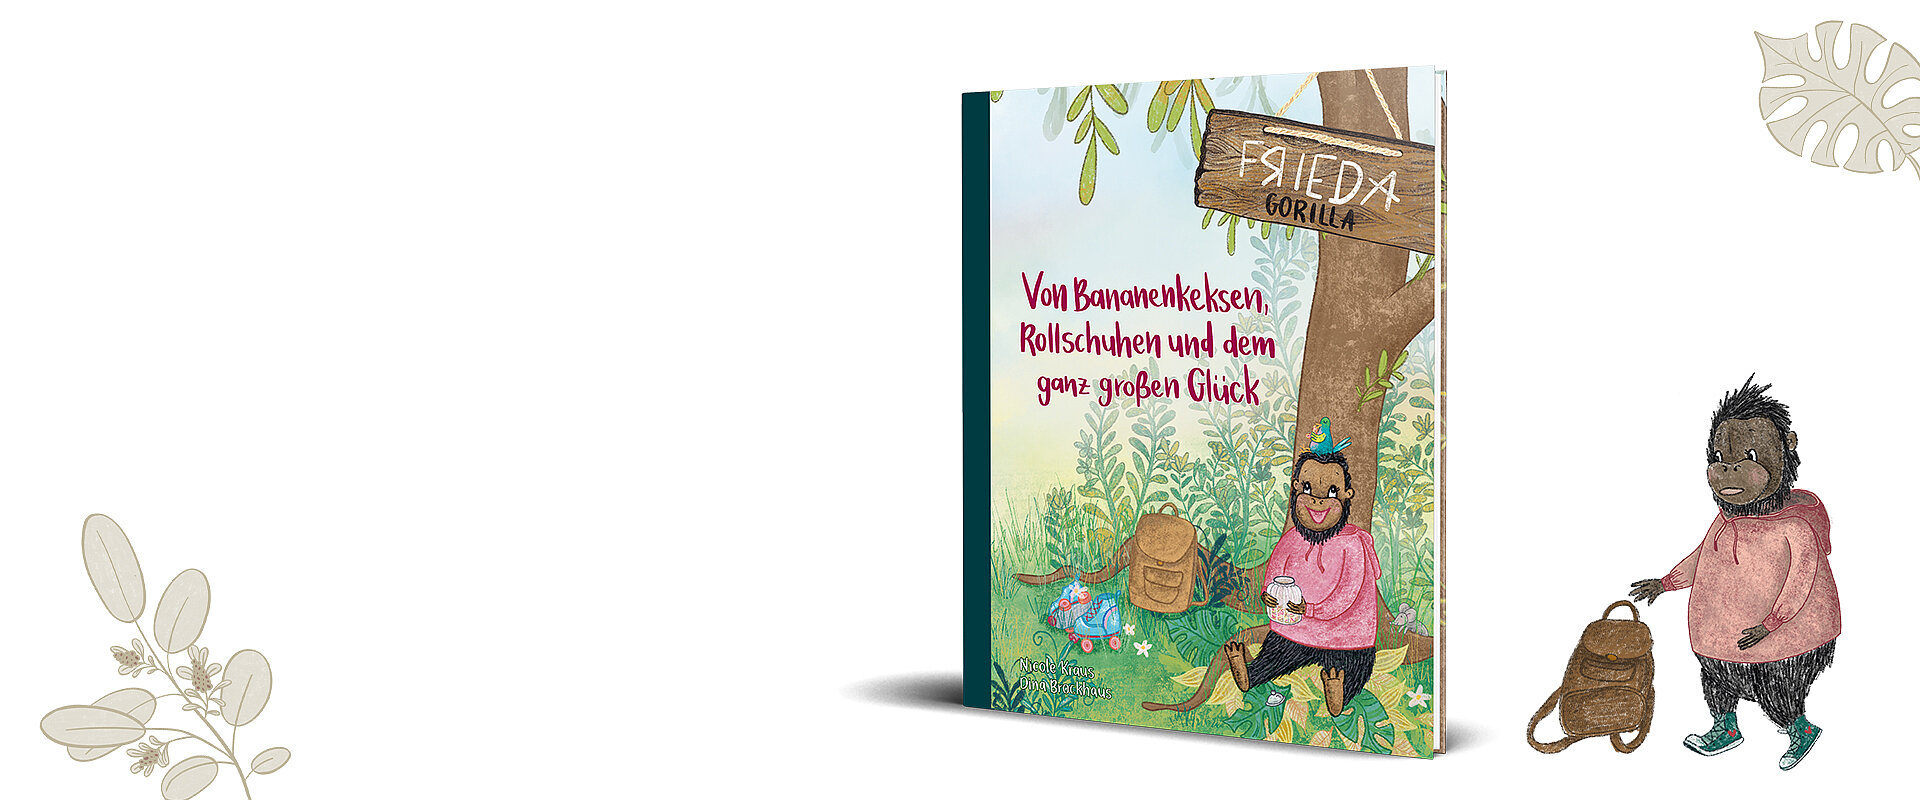 Referenz Kinderbuch Frieda Gorilla